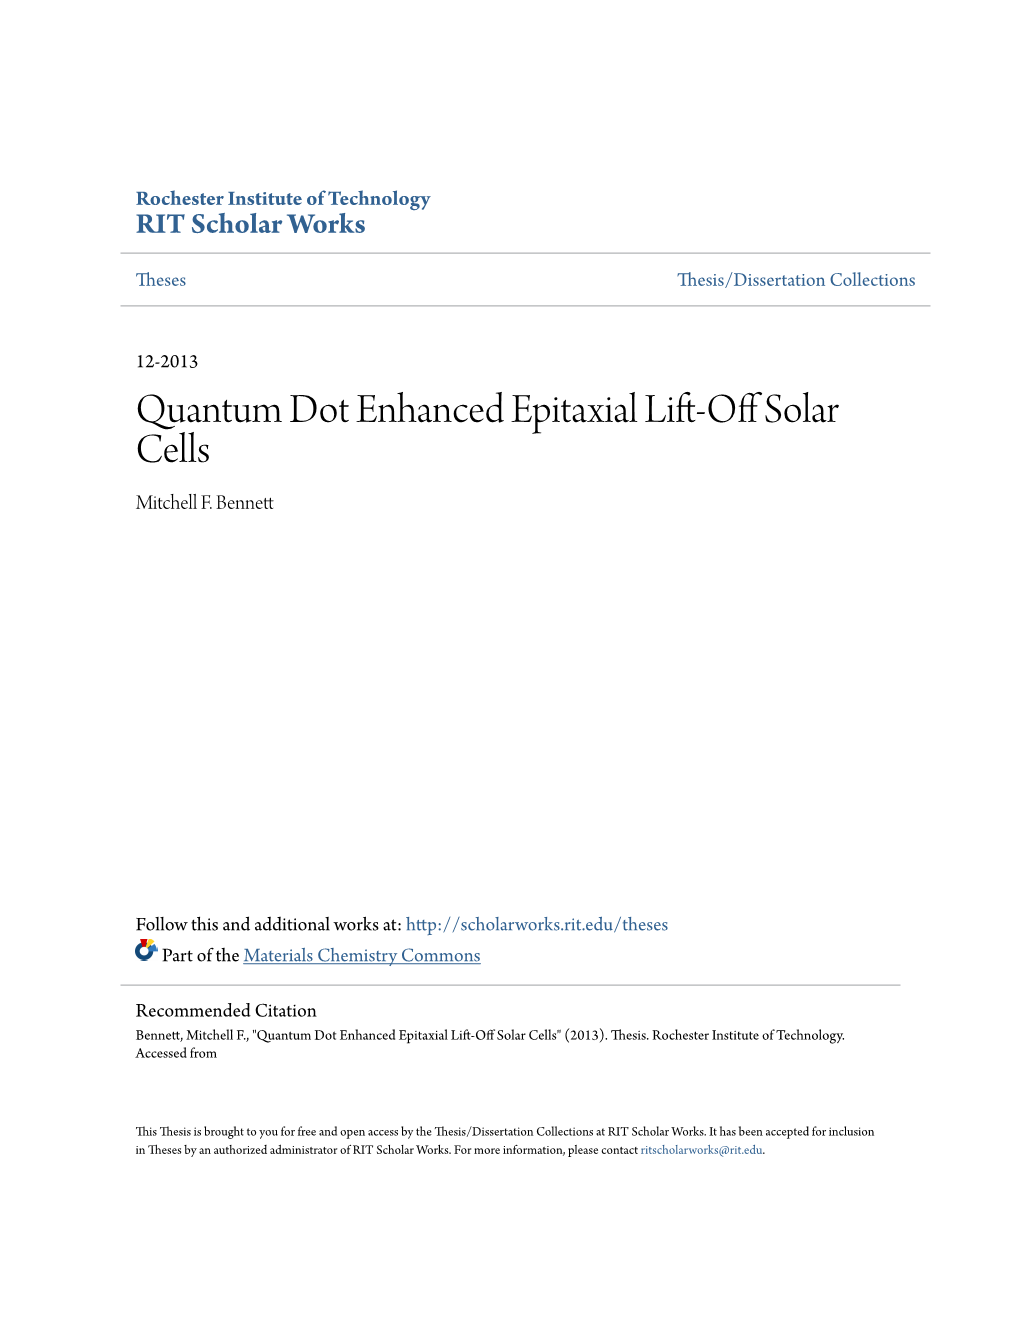 Quantum Dot Enhanced Epitaxial Lift-Off Solar Cells